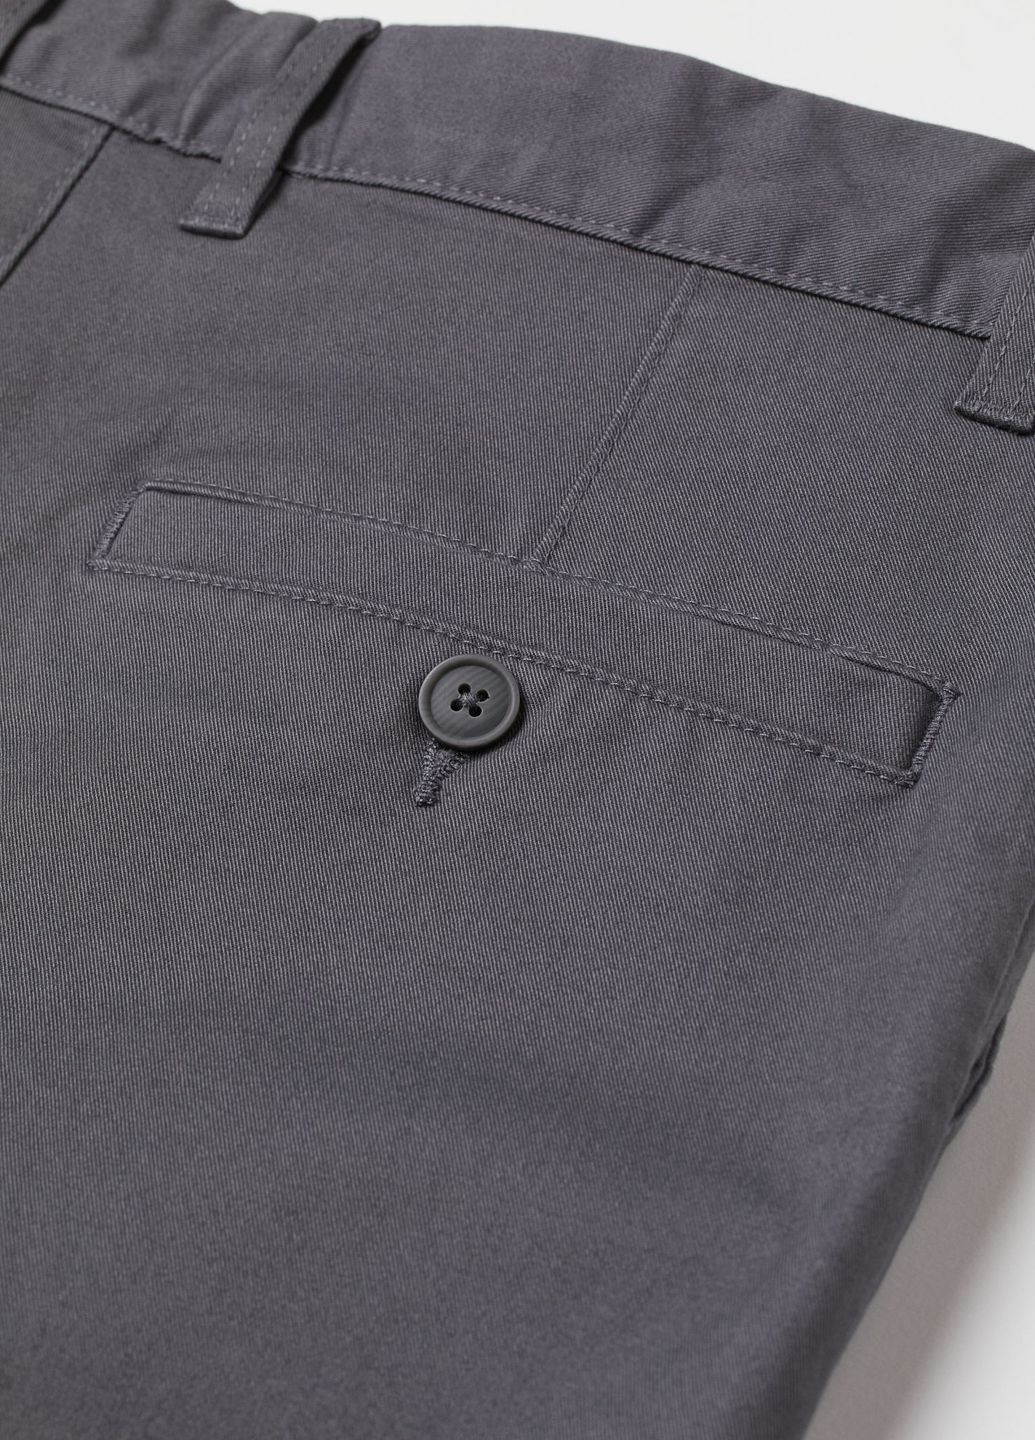 Темно-серые повседневный демисезонные чиносы брюки H&M